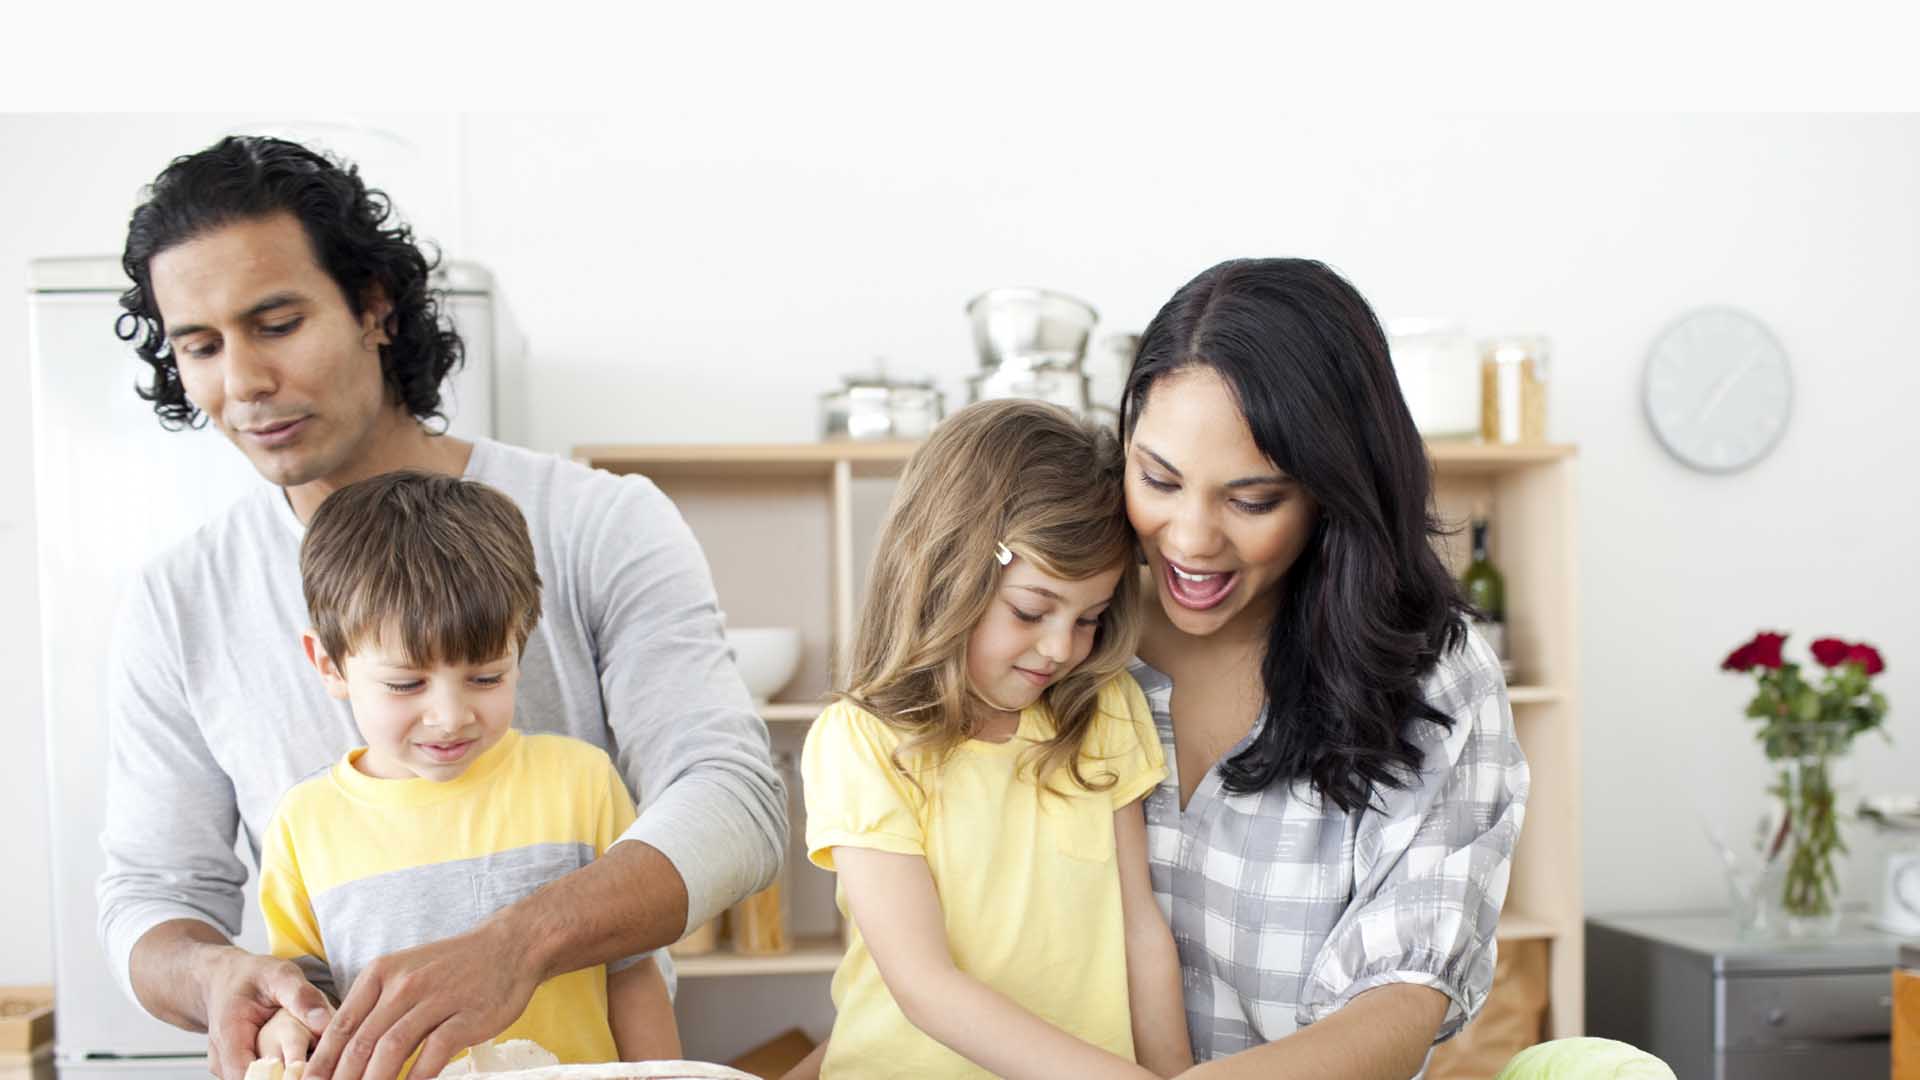 Una organización quiere promover una mayor conexión entre las familias con la campaña "Cena sin pantallas"